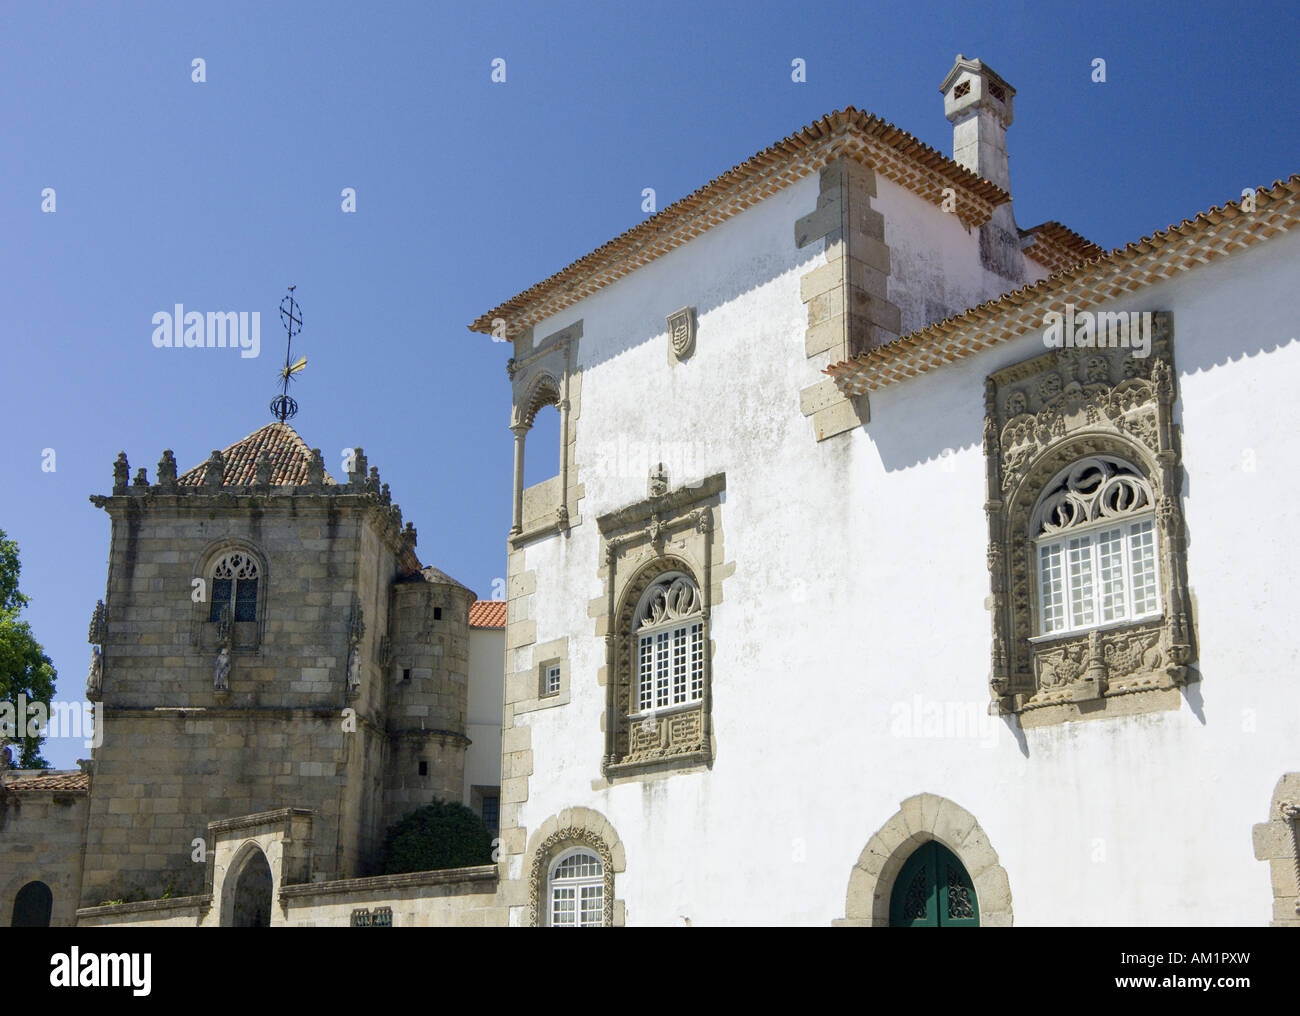 Le Minho, Portugal Costa Verde, bâtiments à Braga, une église gothique tower et de beaux exemples de fenêtres décorées dans le Manuel Banque D'Images